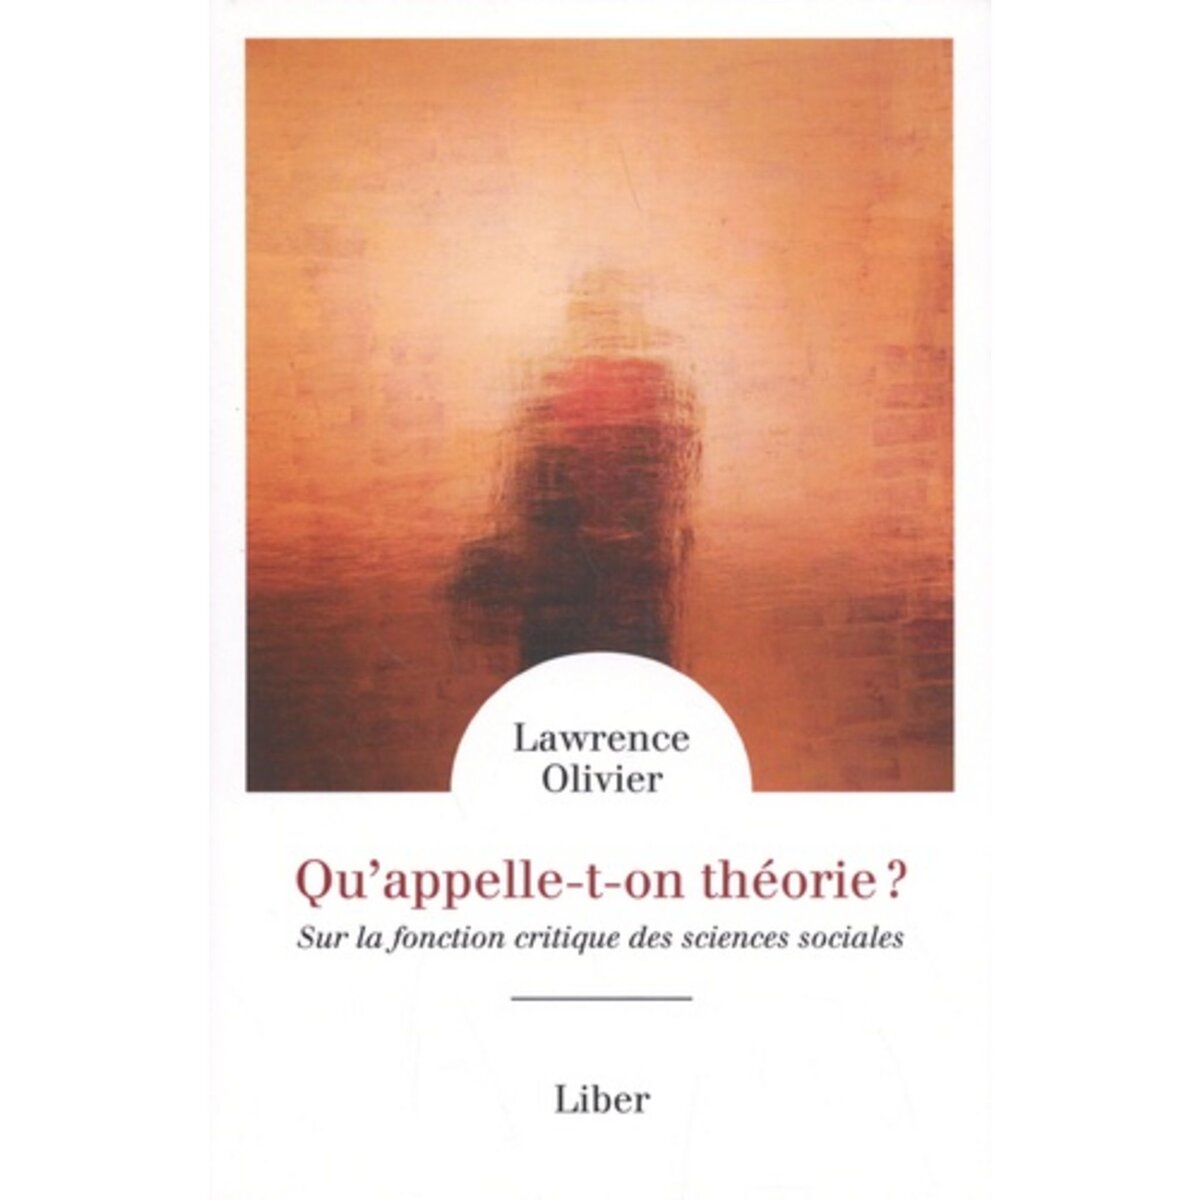  QU'APPELLE-T-ON THEORIE ? SUR LA FONCTION CRITIQUE DES SCIENCES SOCIALES, Olivier Lawrence